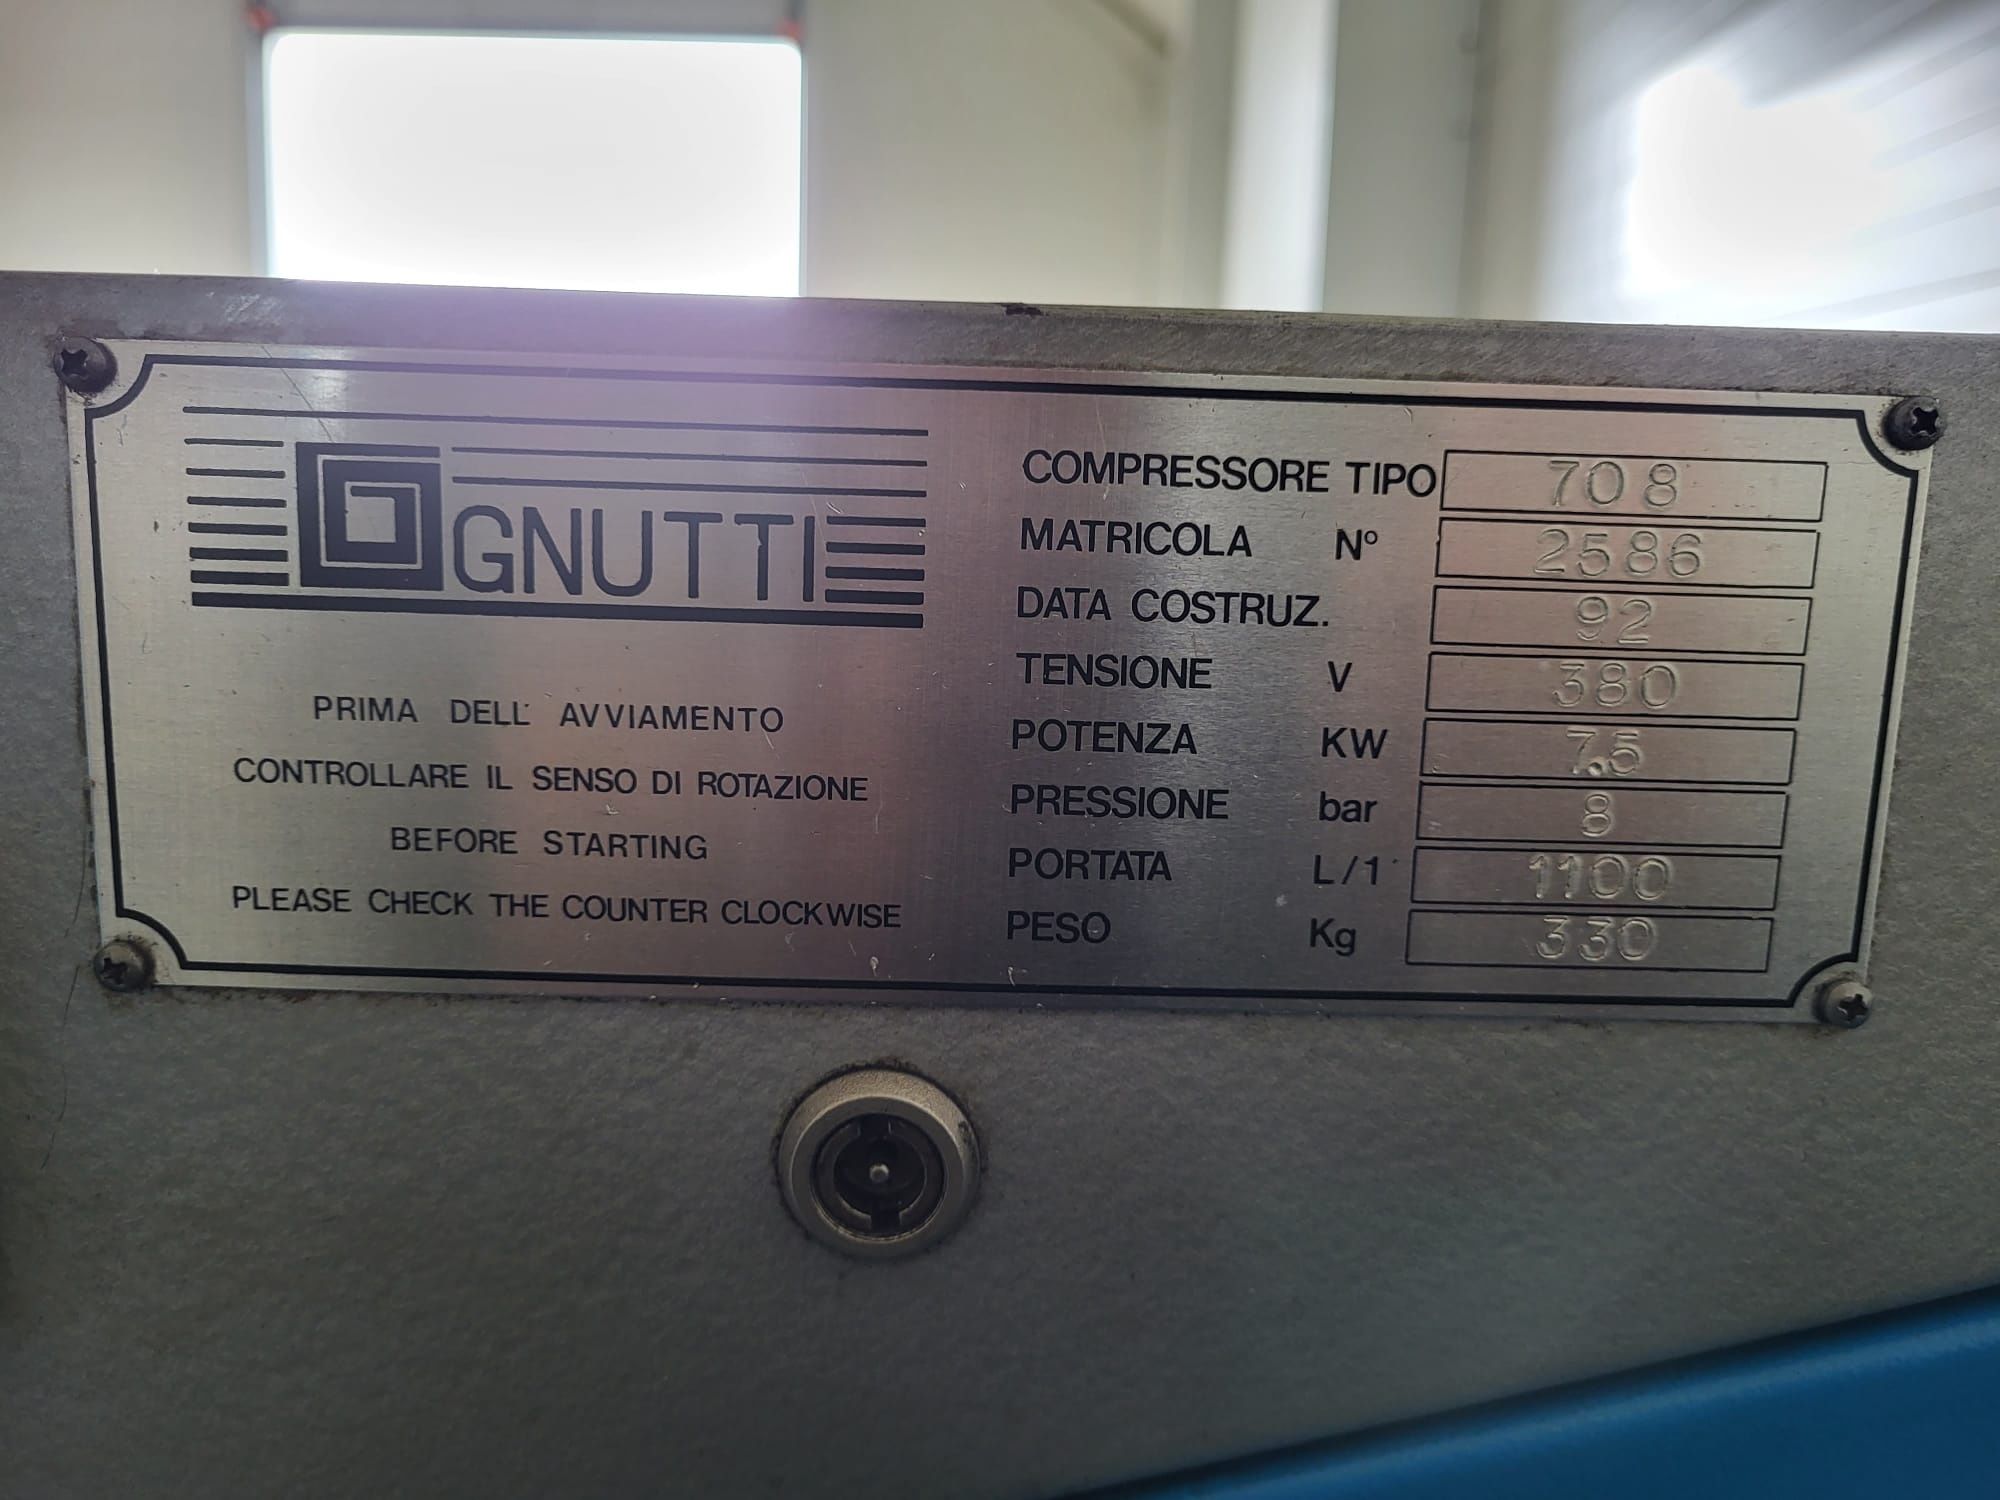 Kompresor łopatkowy Gnutti